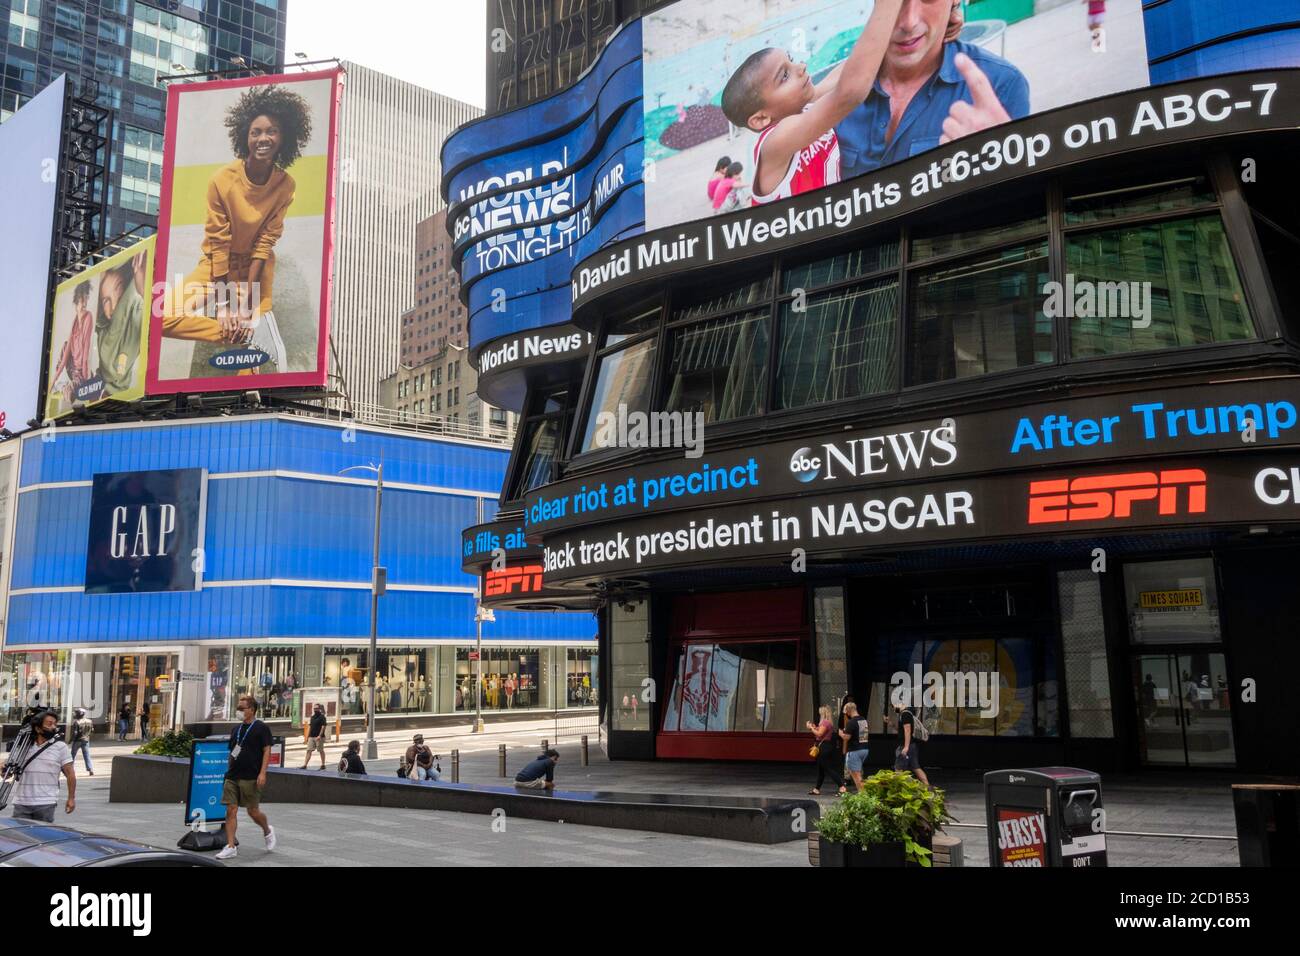 Enveloppez-Vous Dans Les Panneaux En Mouvement à ABC TV News Network Studios à Times Square, New York, États-Unis Banque D'Images